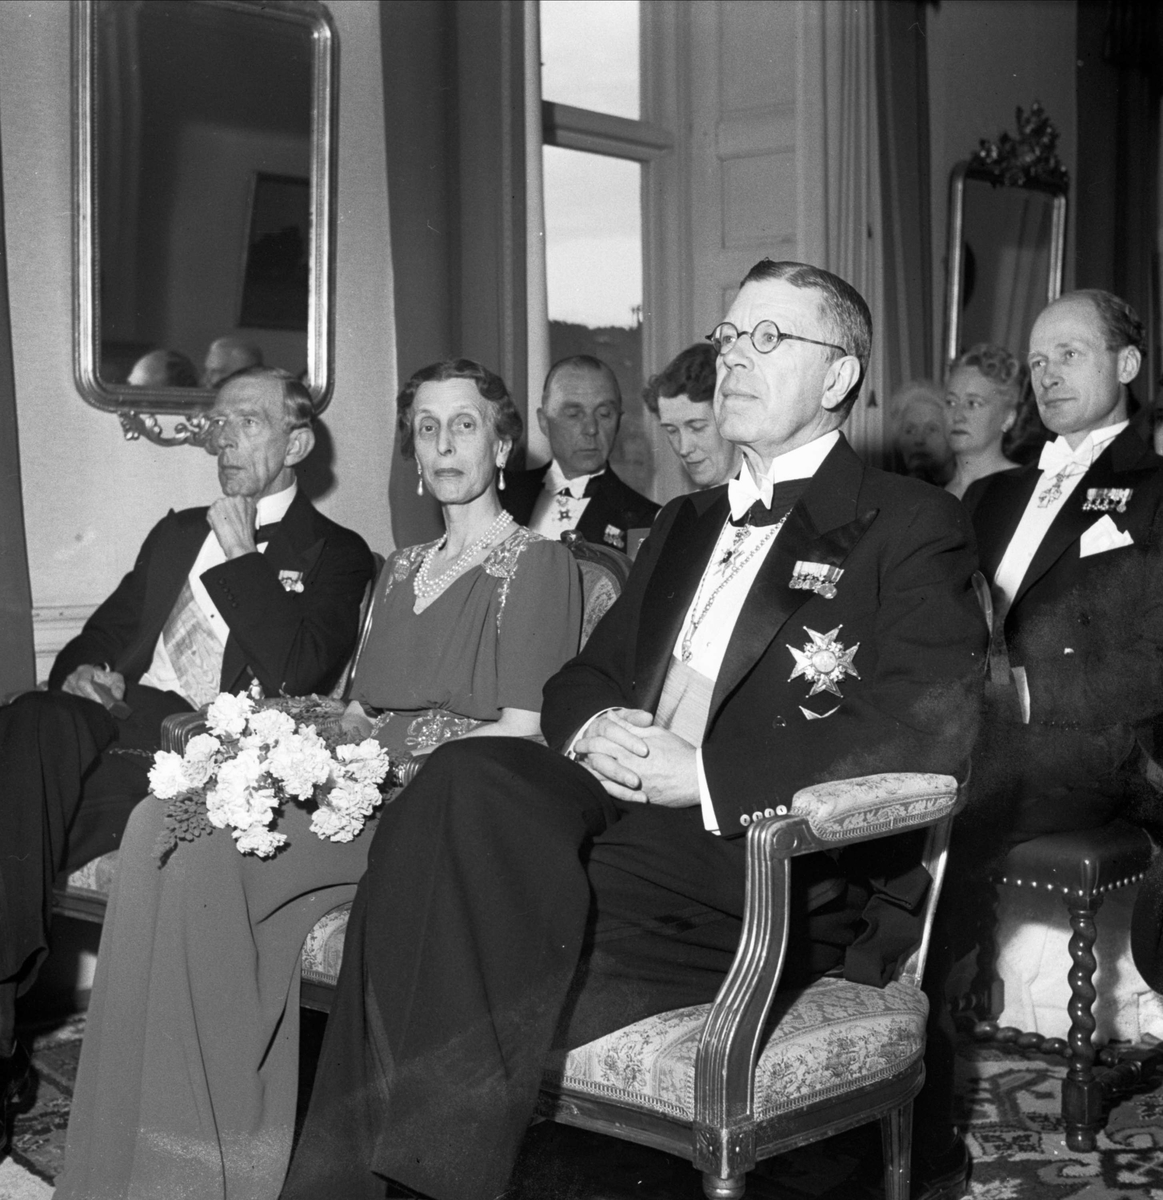 Karl Johansförbundets möte, Uppsala 1948. Kronprinsparet Gustav Adolf och Louise